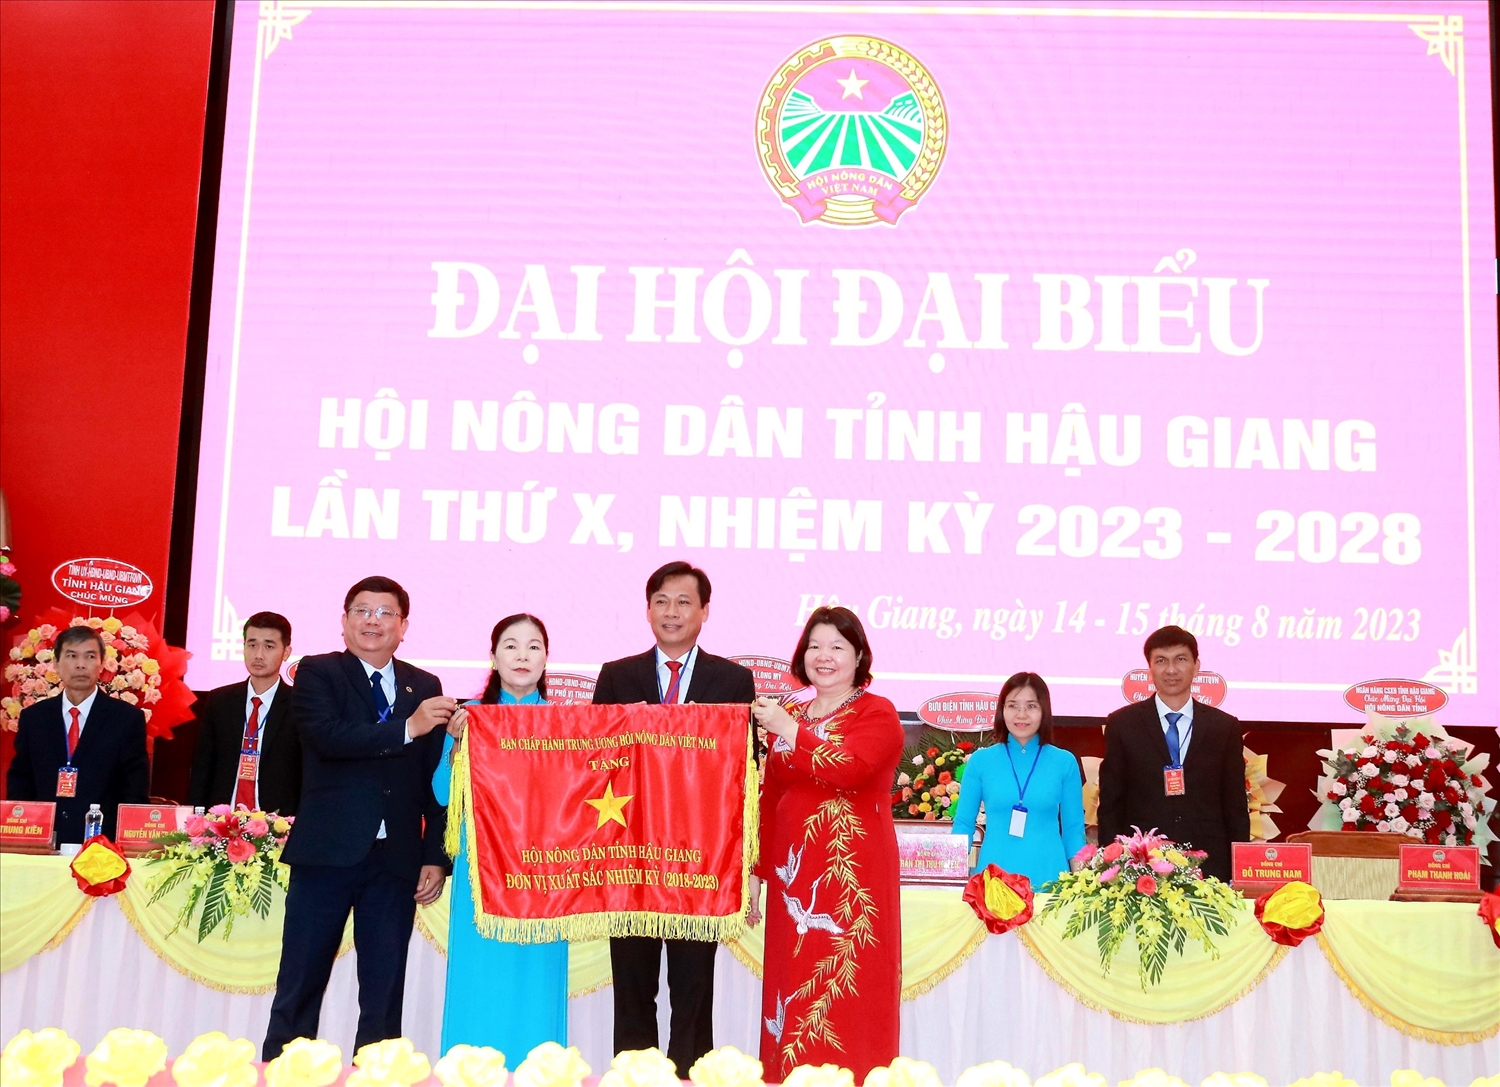 Bà Cao Xuân Thu Vân - Phó Chủ tịch BCH Trung ương Hội Nông dân Việt Nam trao cờ thi đua cho Hội Nông dân tỉnh Hậu Giang